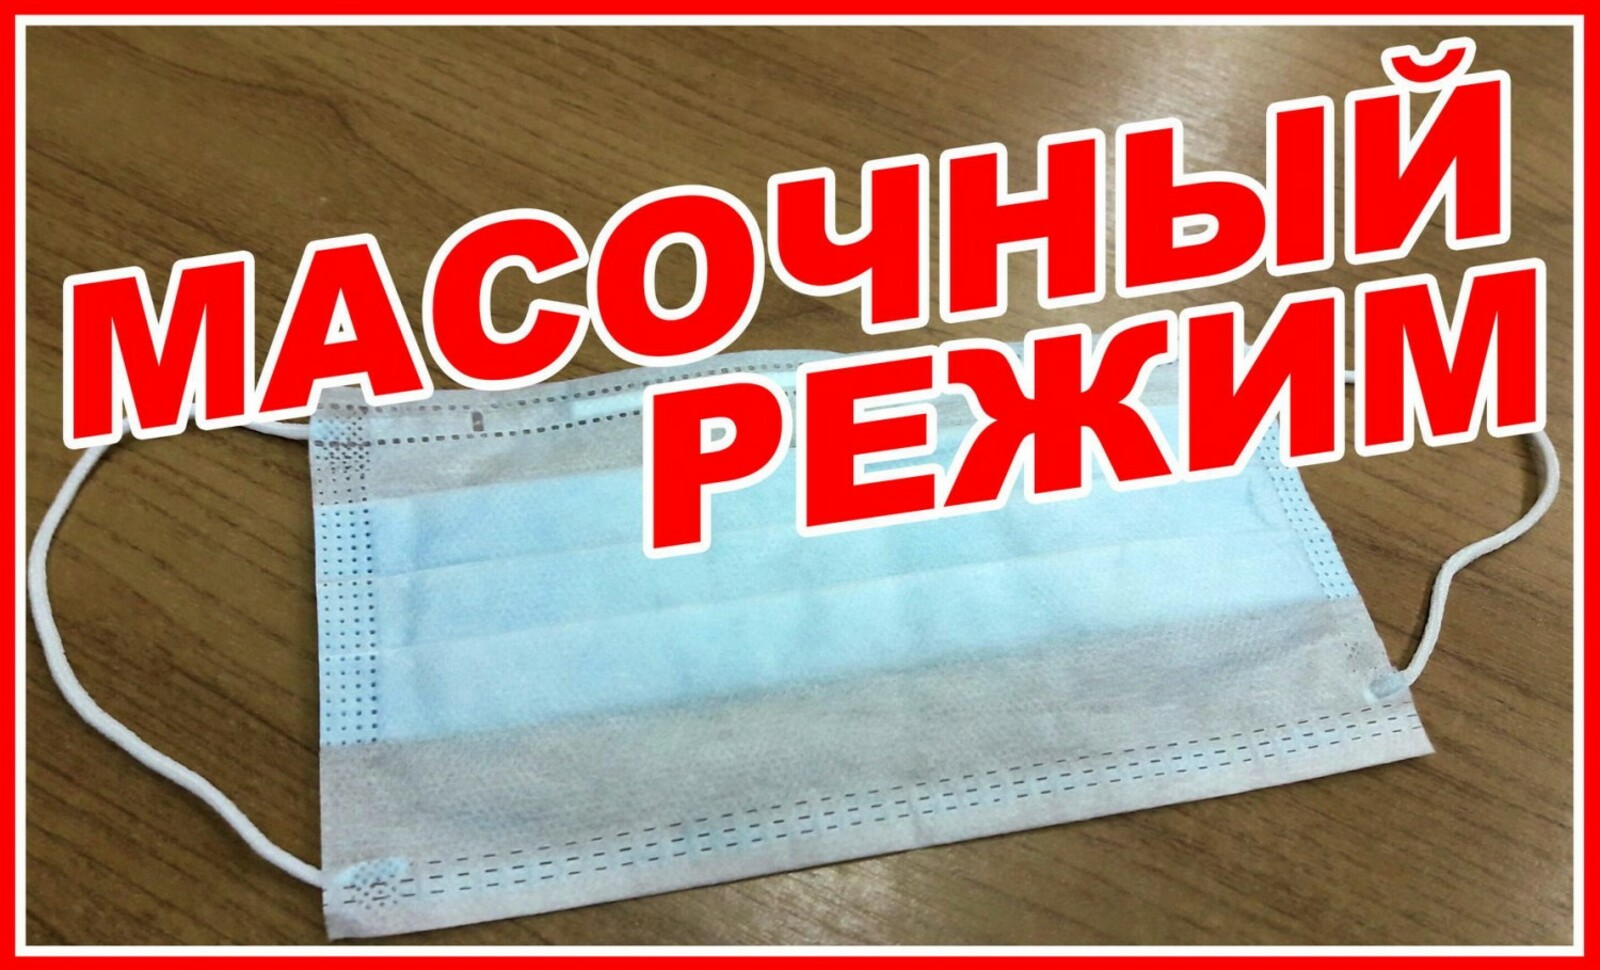 12 октября в Башкортостане начнут действовать новые антиковидные ограничения